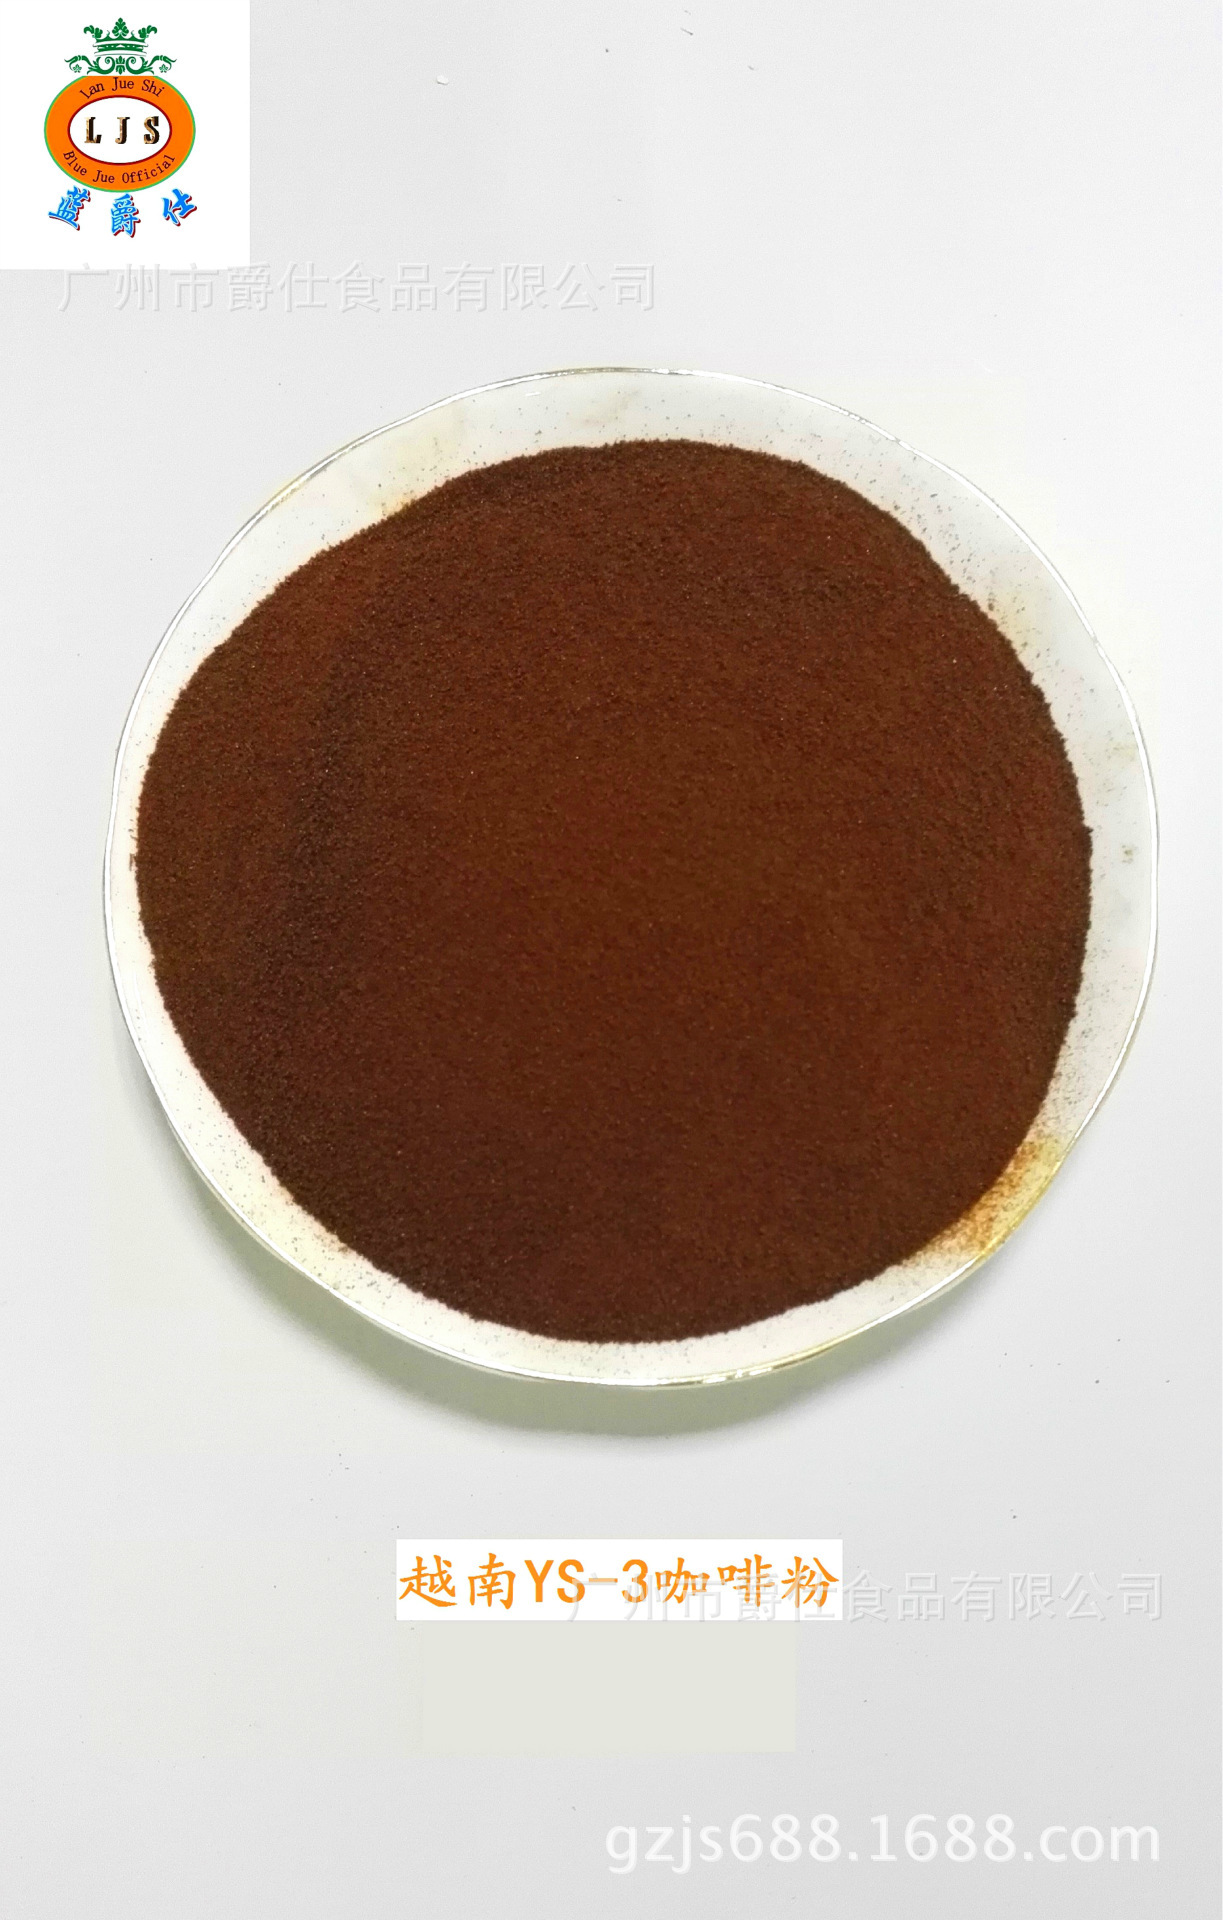 越南YS-3咖啡原粉